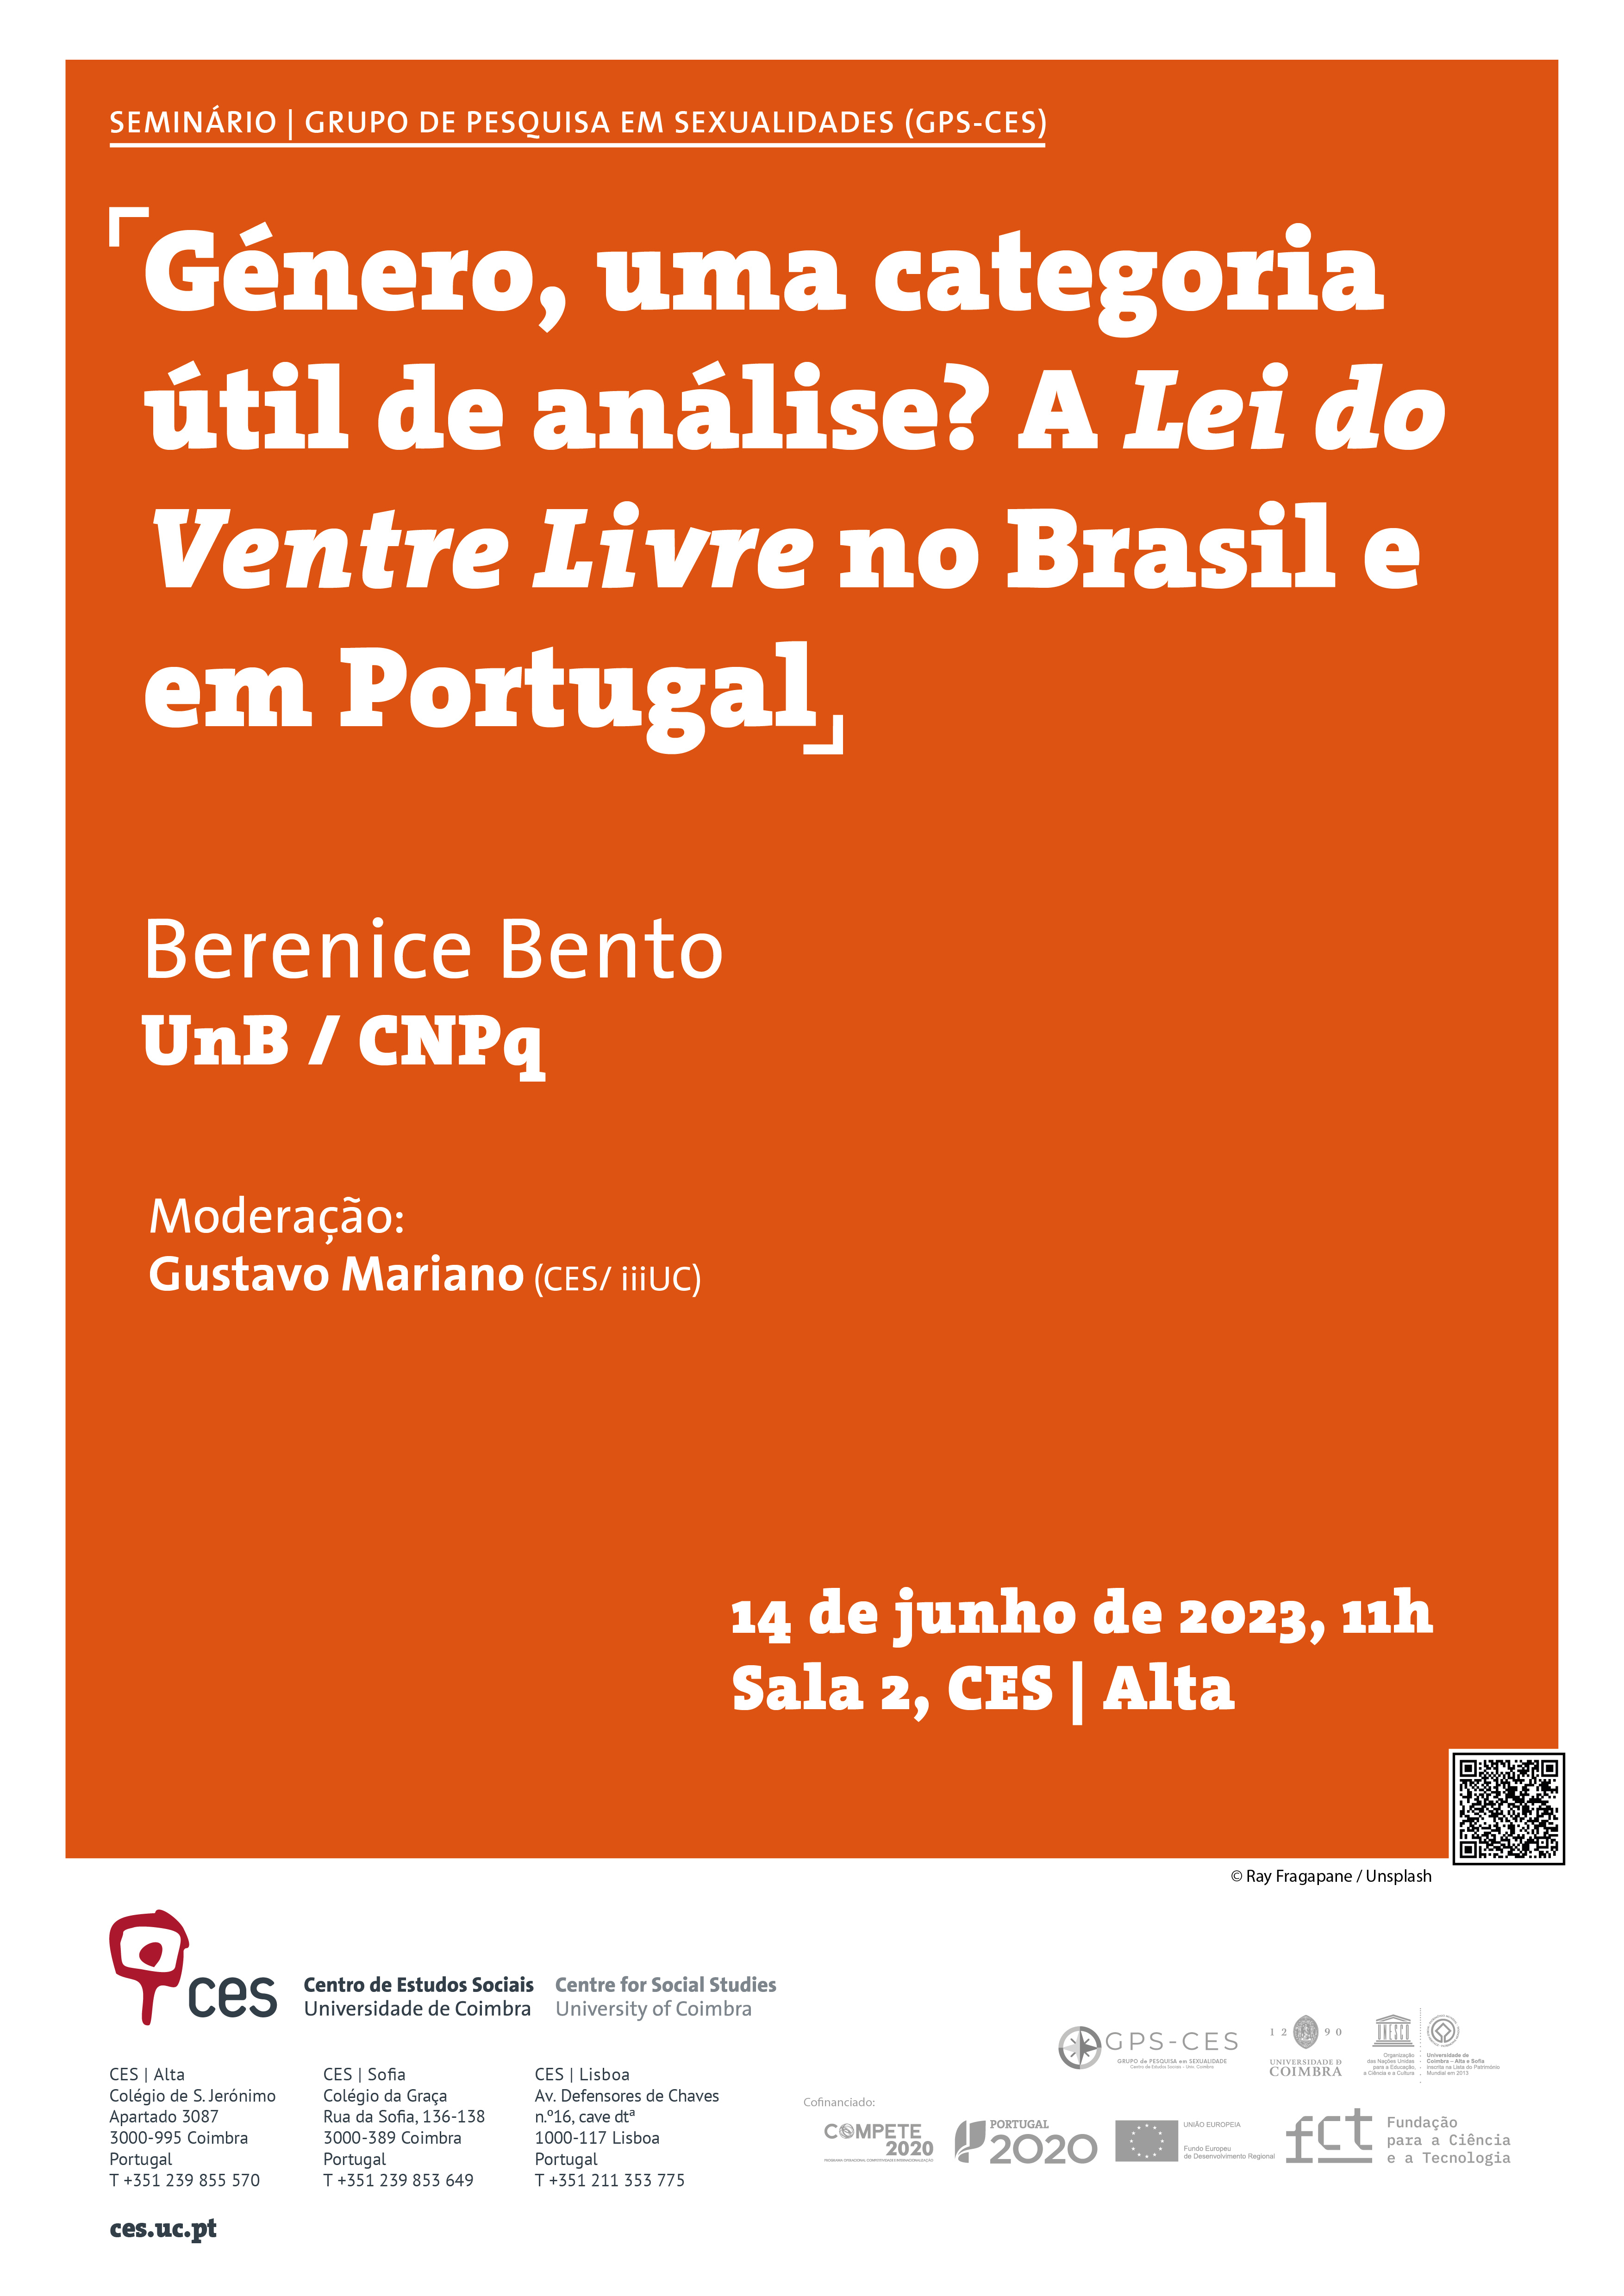 Género, uma categoria útil de análise? A Lei do Ventre Livre no Brasil e em Portugal<span id="edit_43336"><script>$(function() { $('#edit_43336').load( "/myces/user/editobj.php?tipo=evento&id=43336" ); });</script></span>